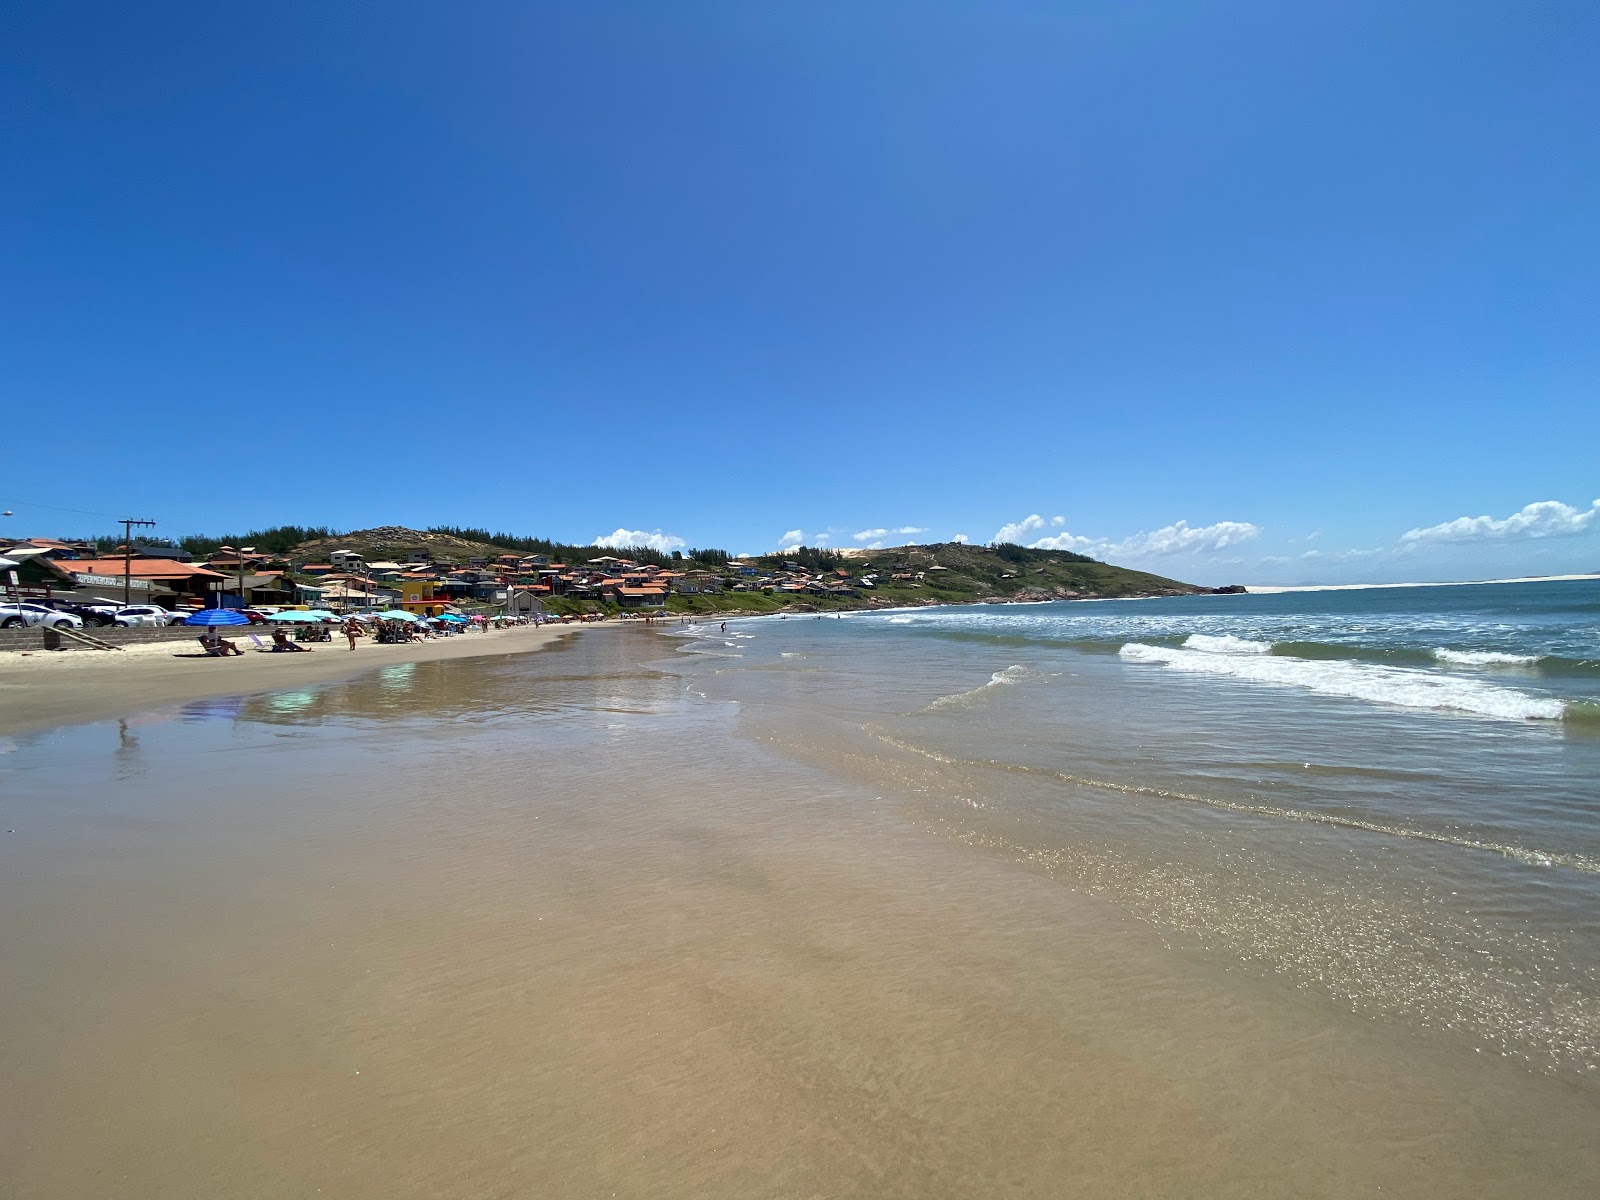 Fotografie cu Praia do Farol de Santa Marta cu o suprafață de apa pură turcoaz